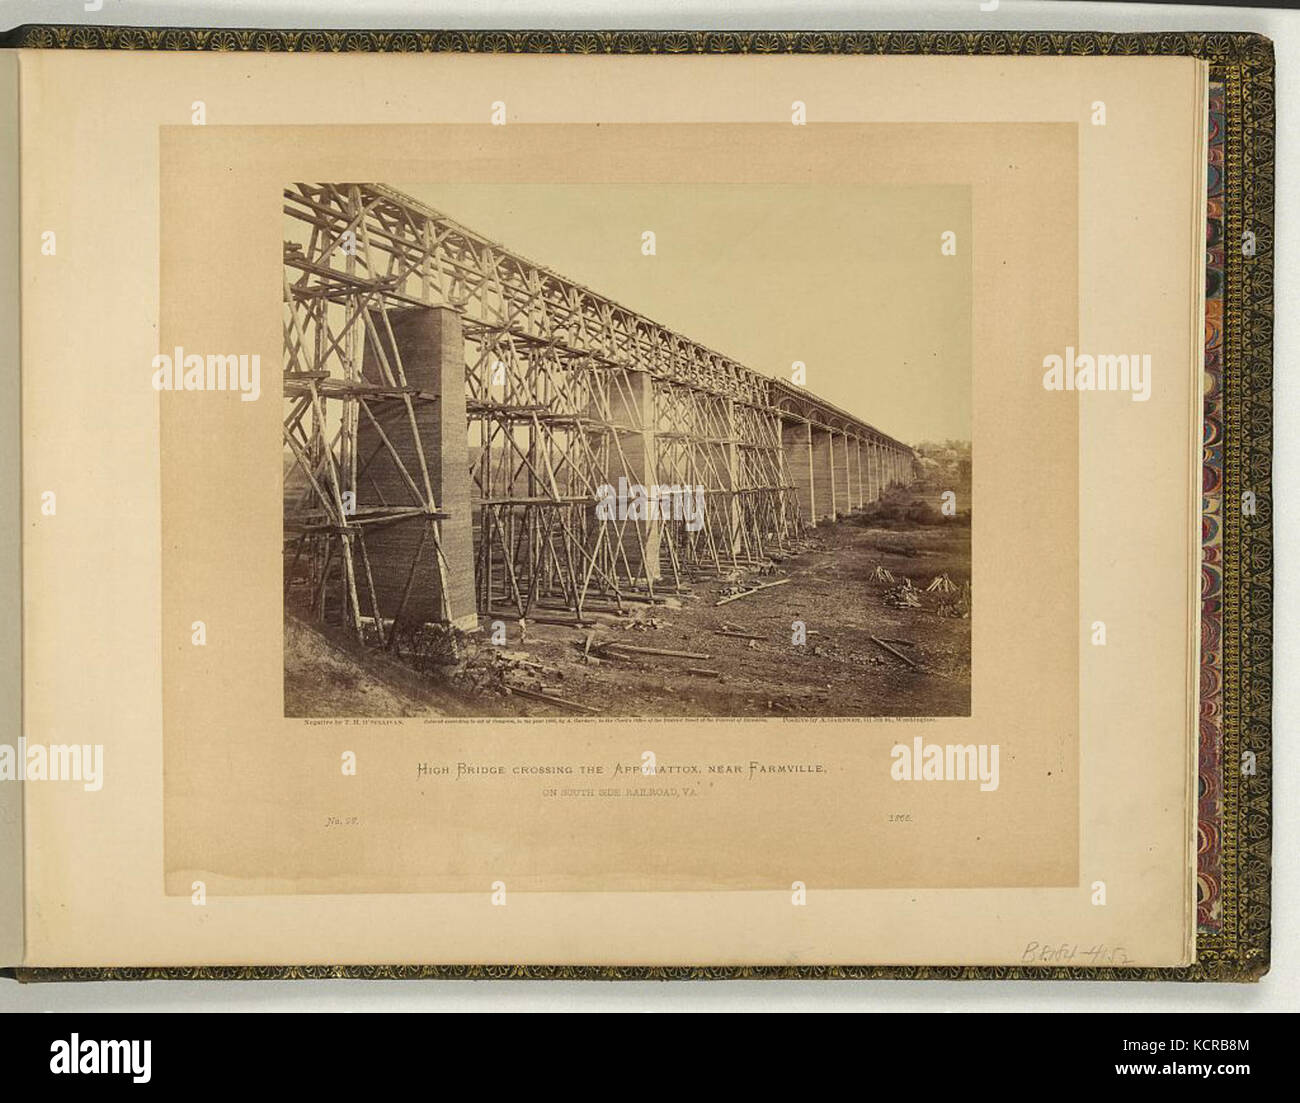 High Bridge crossing the Appomattox, near Farmville, on South Side Railroad, Va., April 1865 Stock Photo